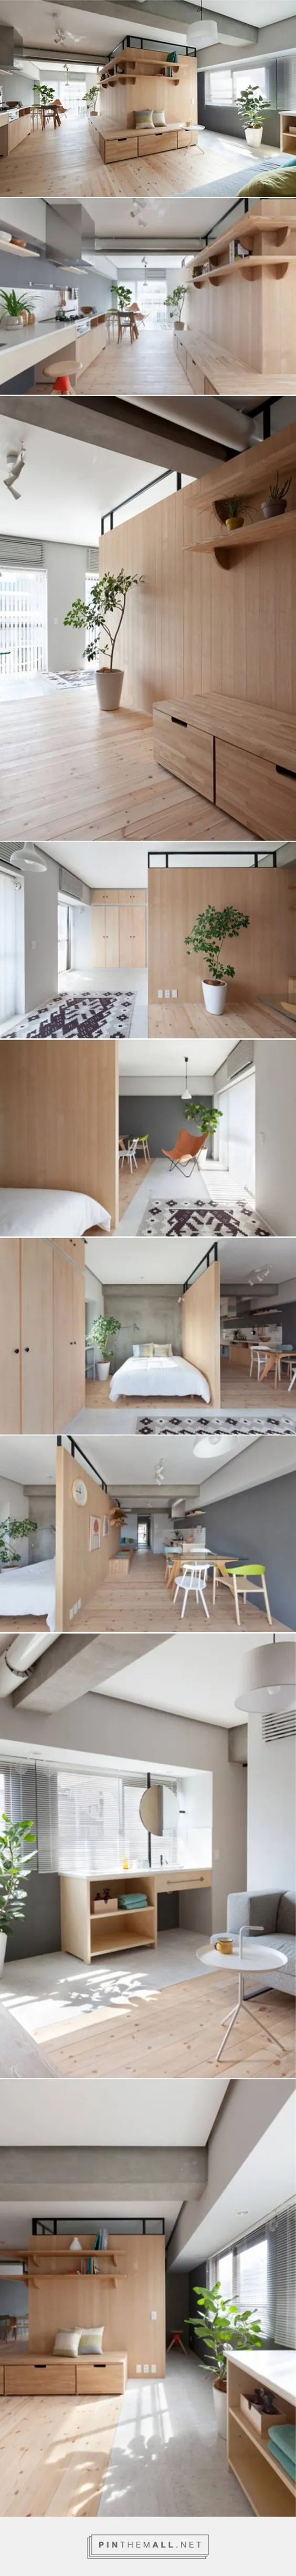 پارتیشن مینیمالیستی هوشمندانه آپارتمان 689 متر مربع در توکیو را گسترش می دهد: TreeHugger ... - تصویر تصاویر گروهی